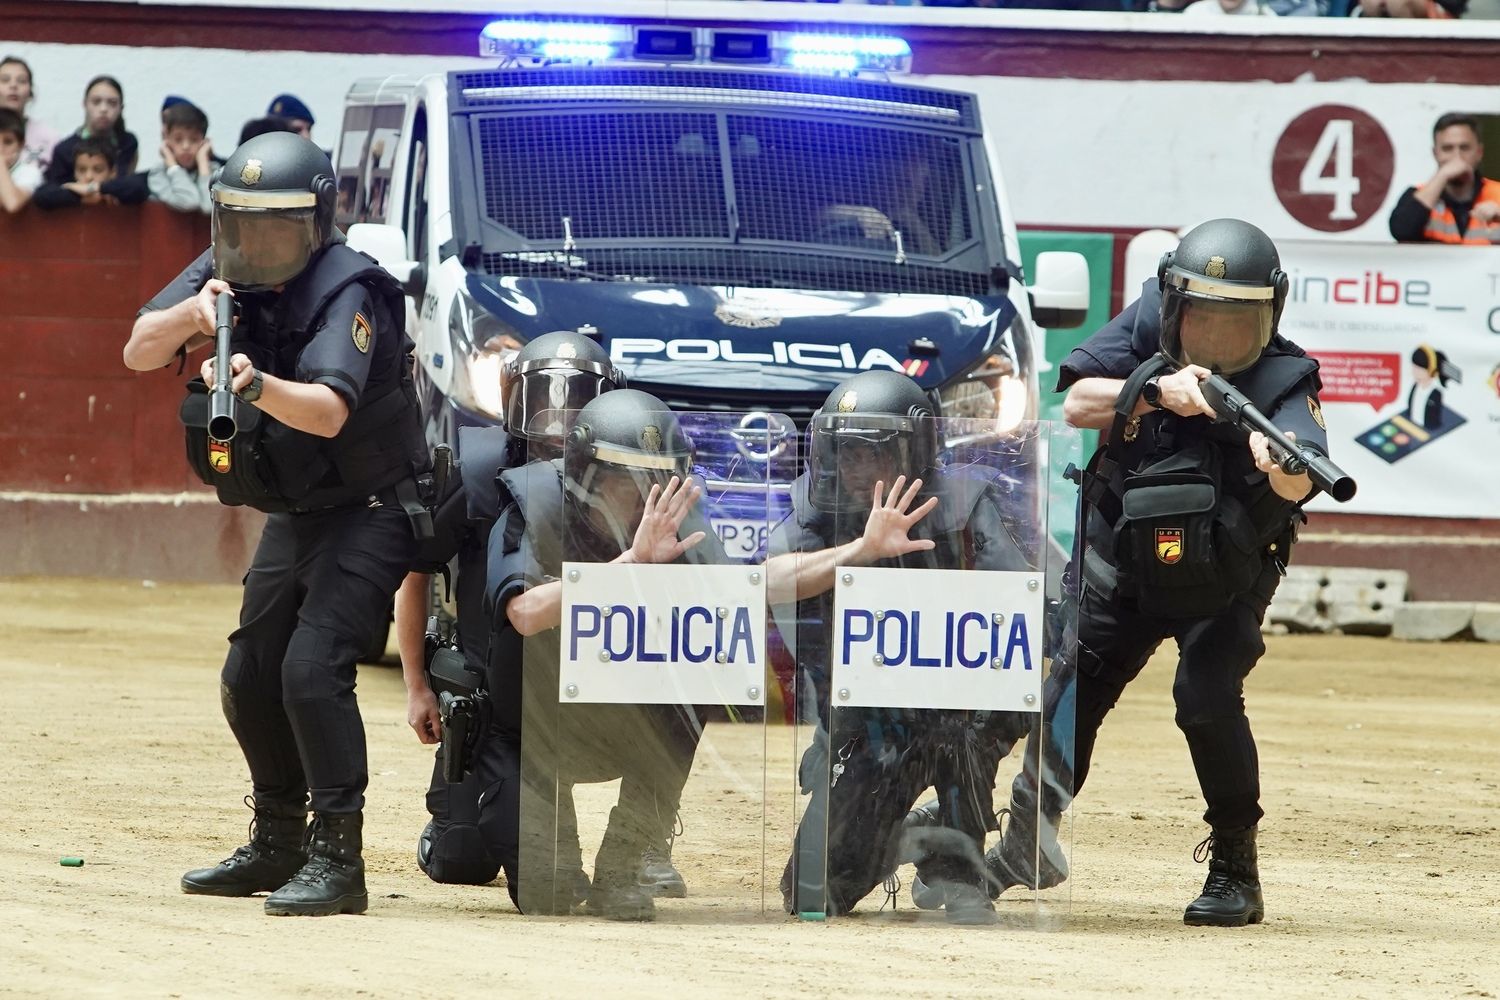 Exhibición de medios policiales en la plaza de toros de León | Campillo / ICAL 